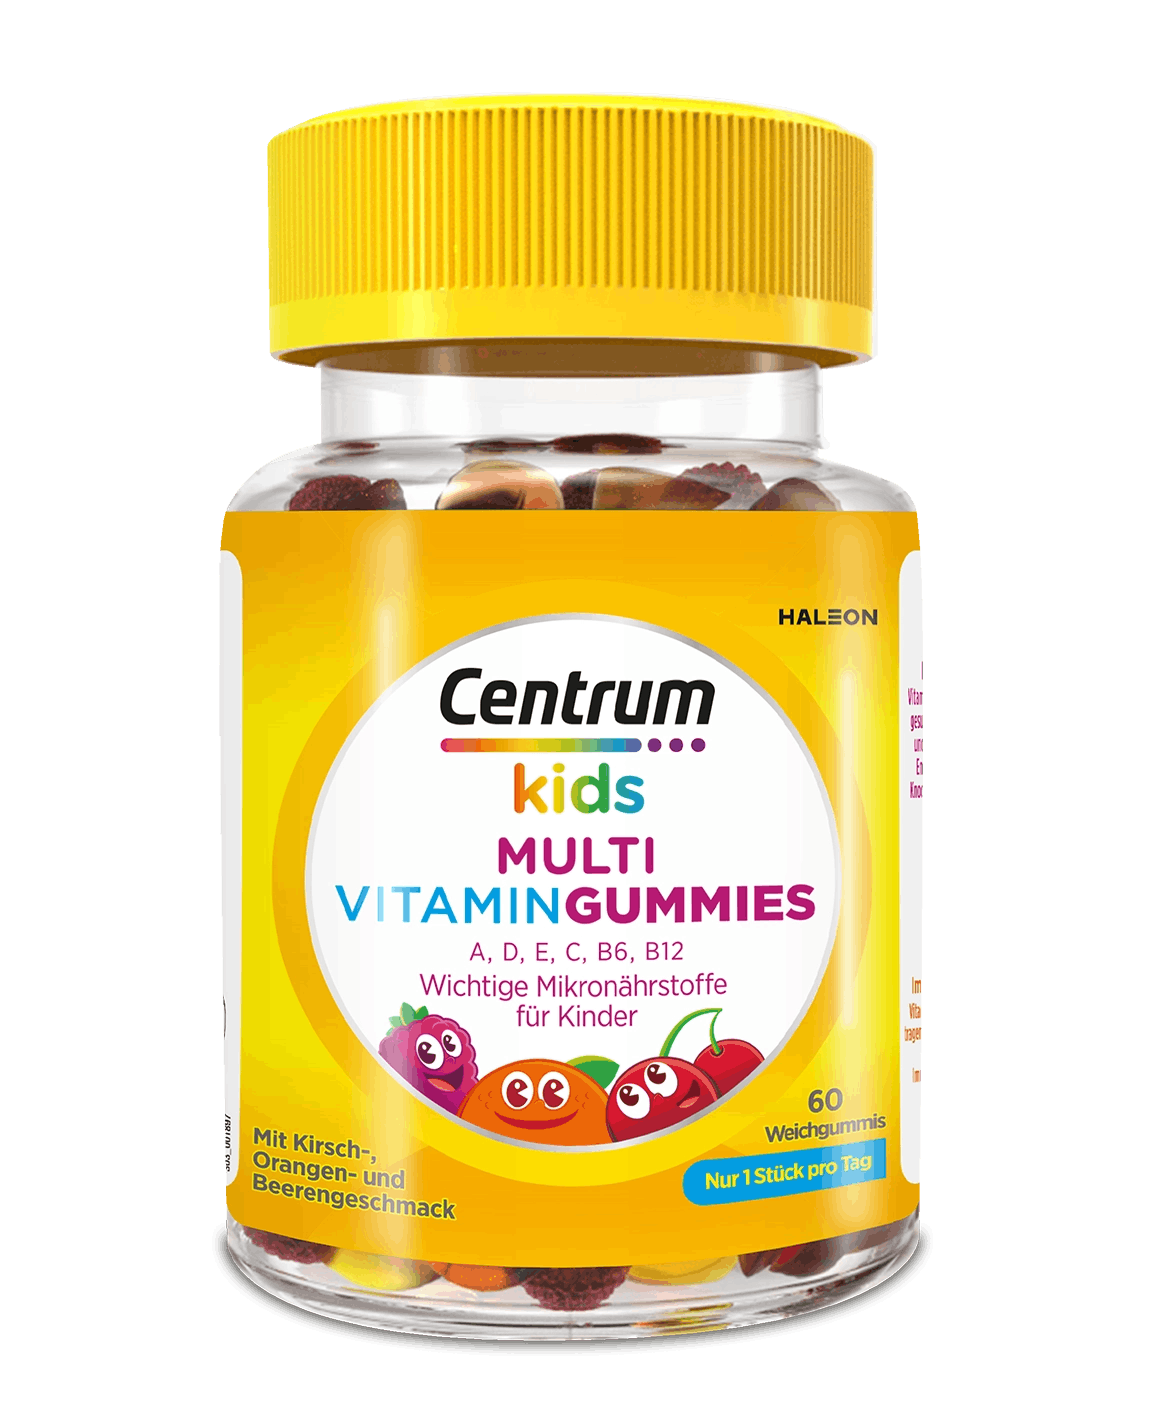 Centrum Kids Multi Vitamin Gummies Packung auf weißem Hintergrund